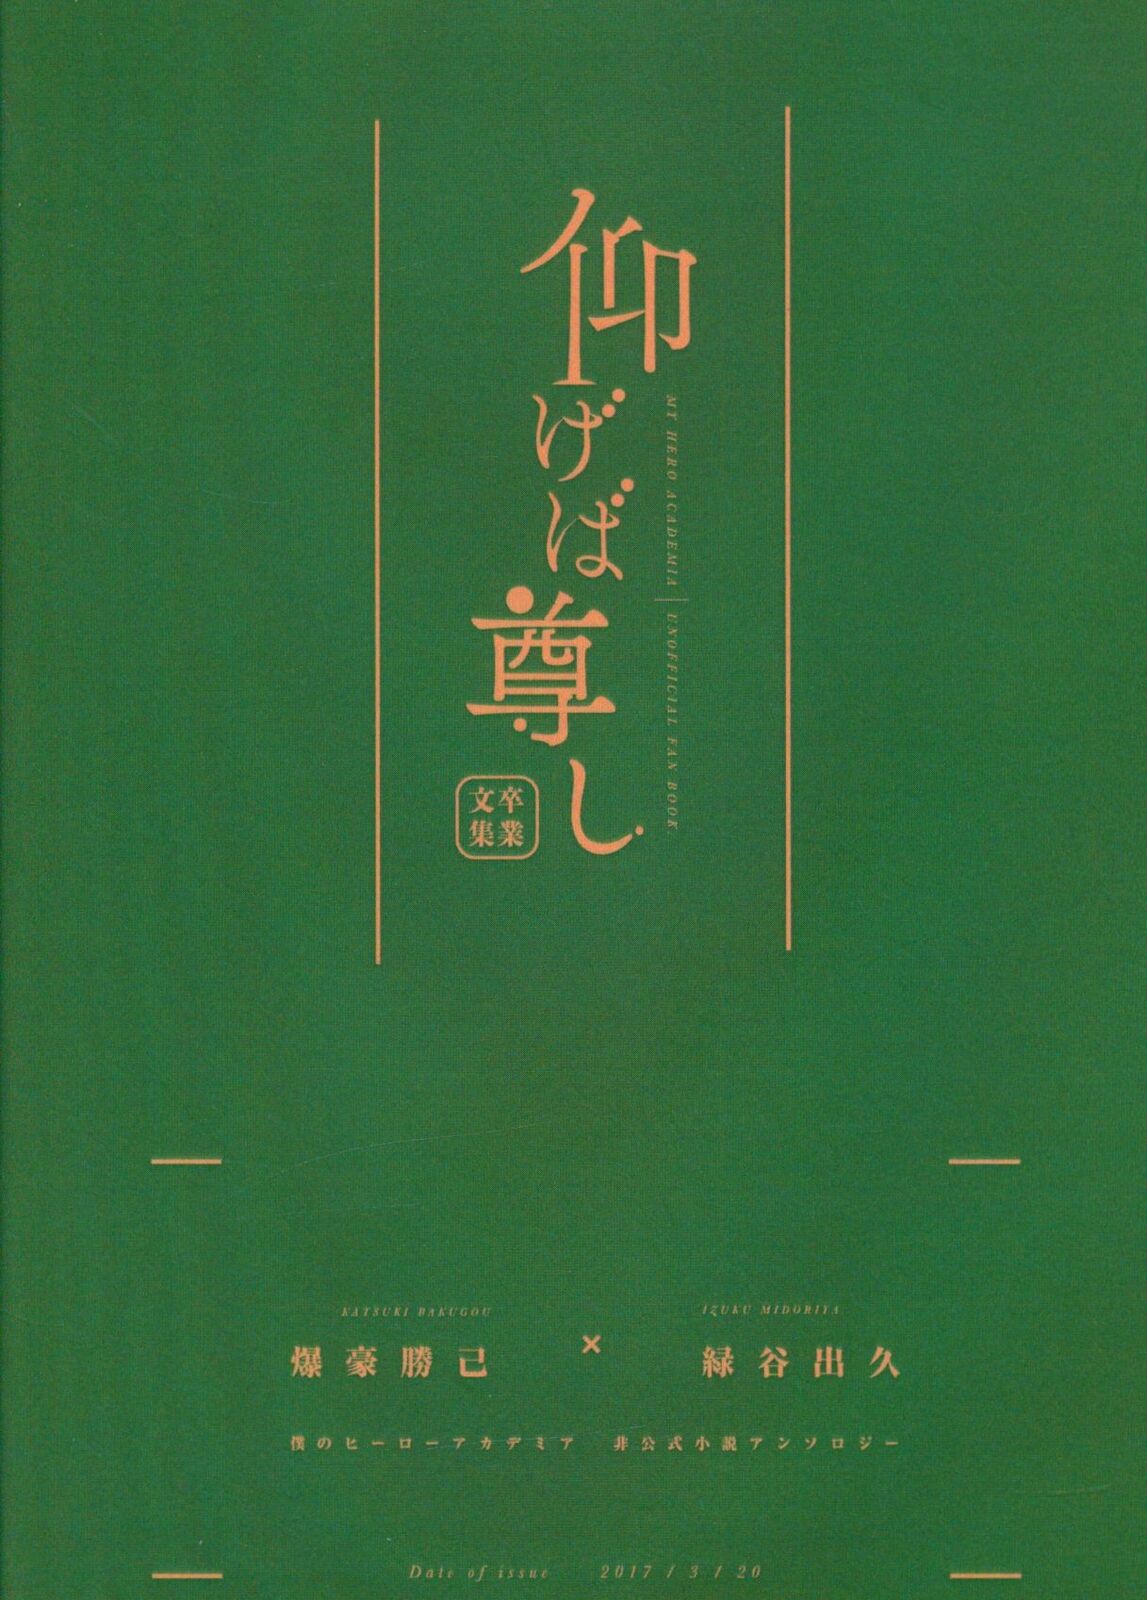 Doujinshi 1551 (Gururu / Mochiko) Aogeba Tohoku Graduation Collection * Bunk...